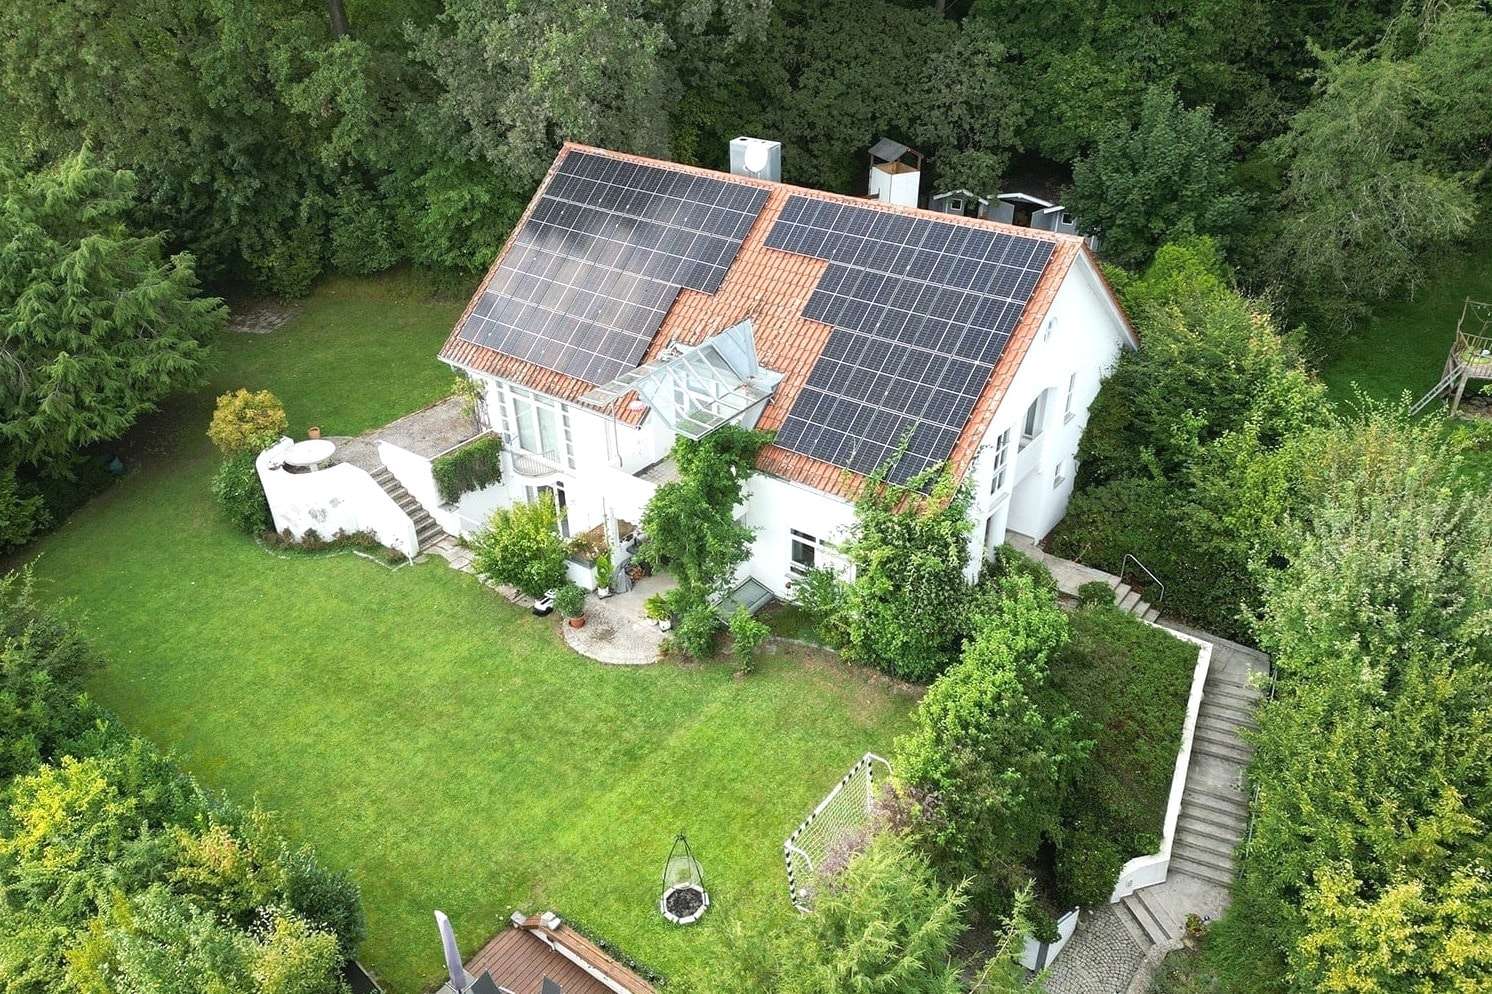 viel Privatsphäre - Villa in 94469 Deggendorf mit 250m² kaufen